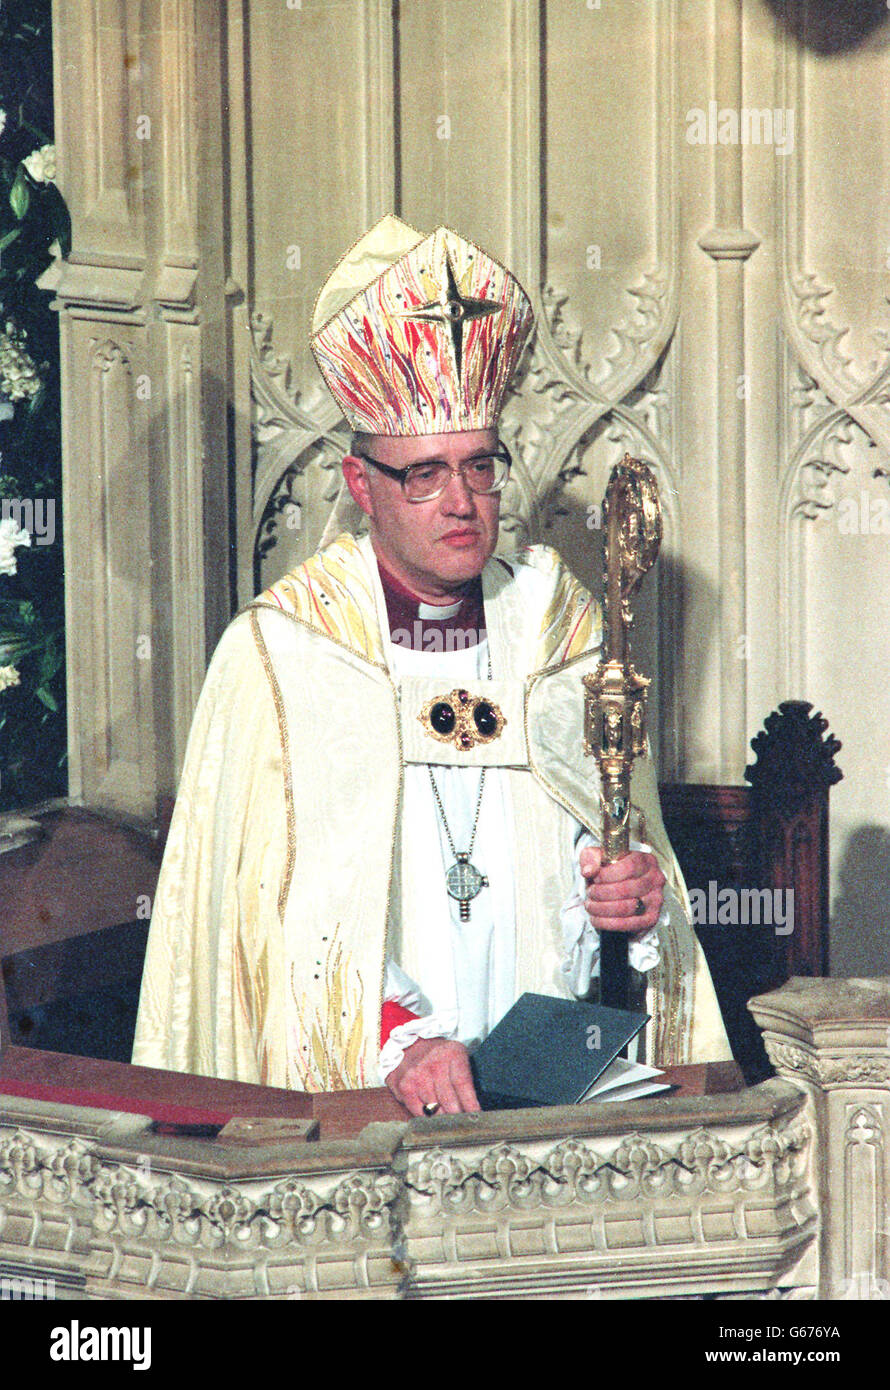 L'arcivescovo di Cantebury, il dottor George Carey, è installato nel trono nella cattedrale di Cantebury durante il servizio di intronizzazione. IC Foto Stock